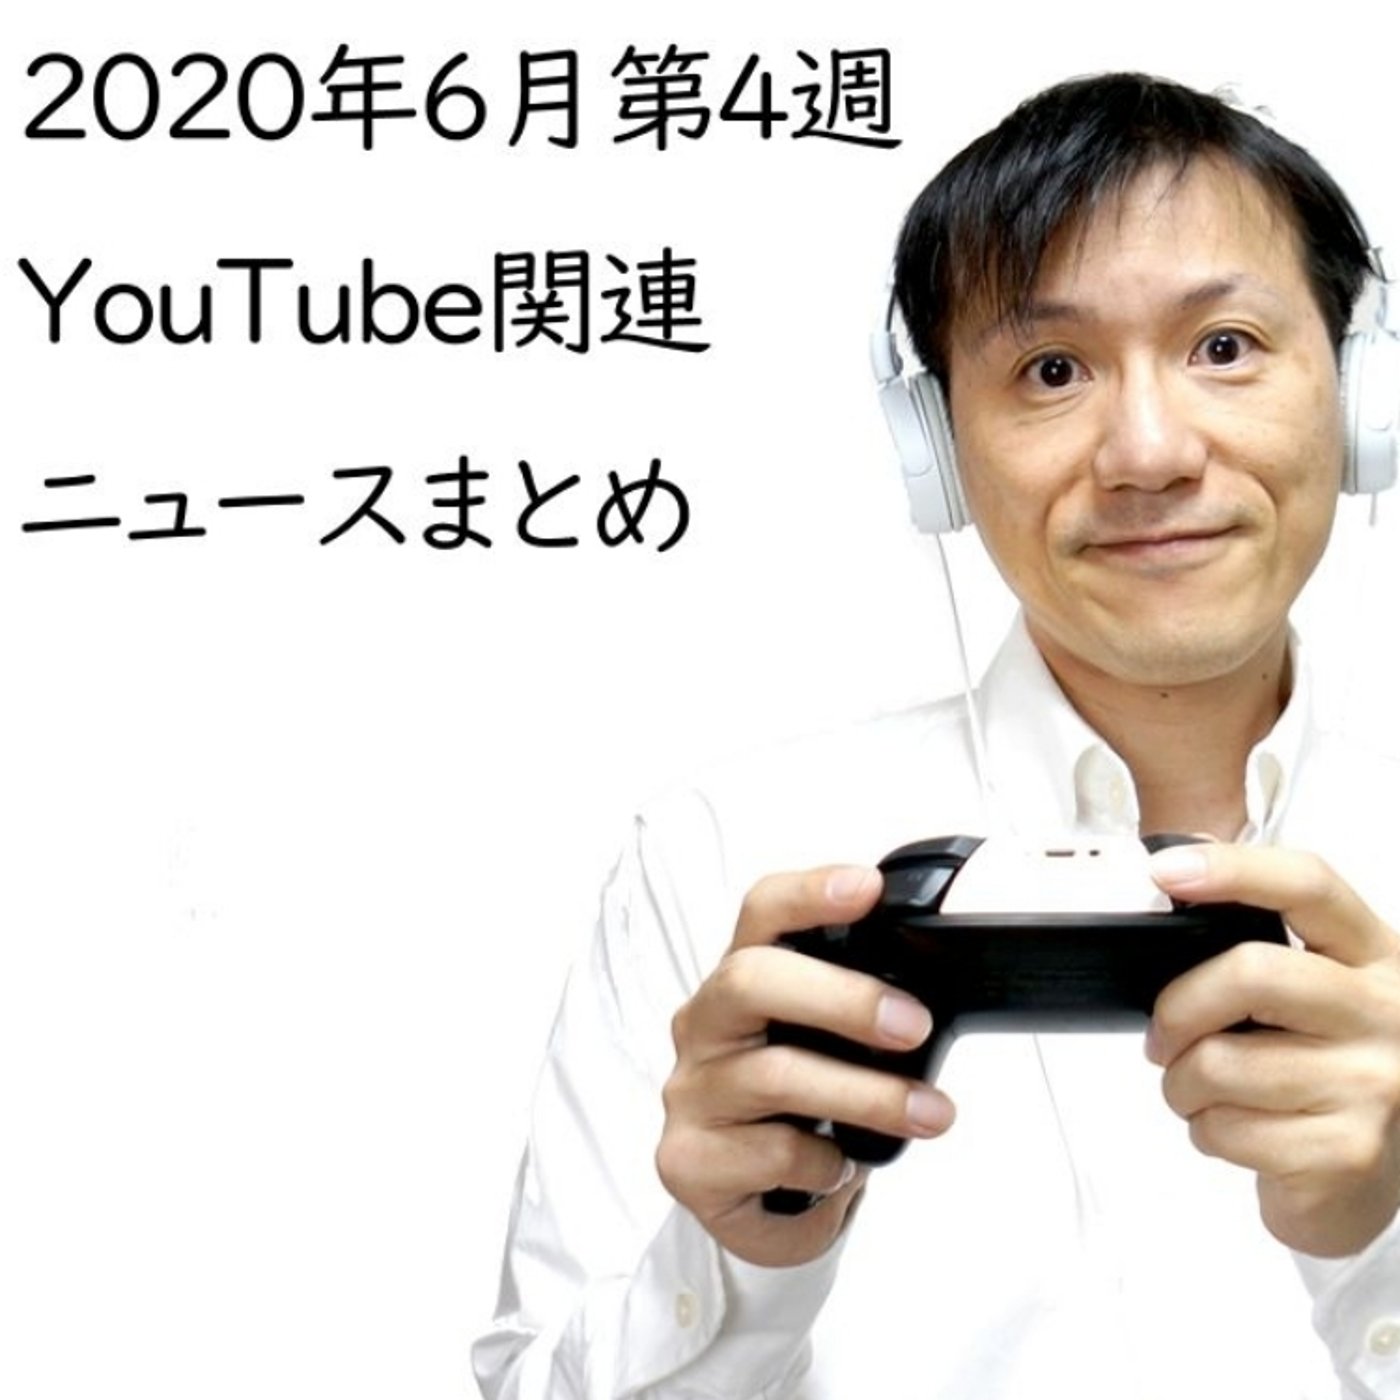 2020年6月第4週YouTube関連ニュースまとめ～芸能人無双【#131】